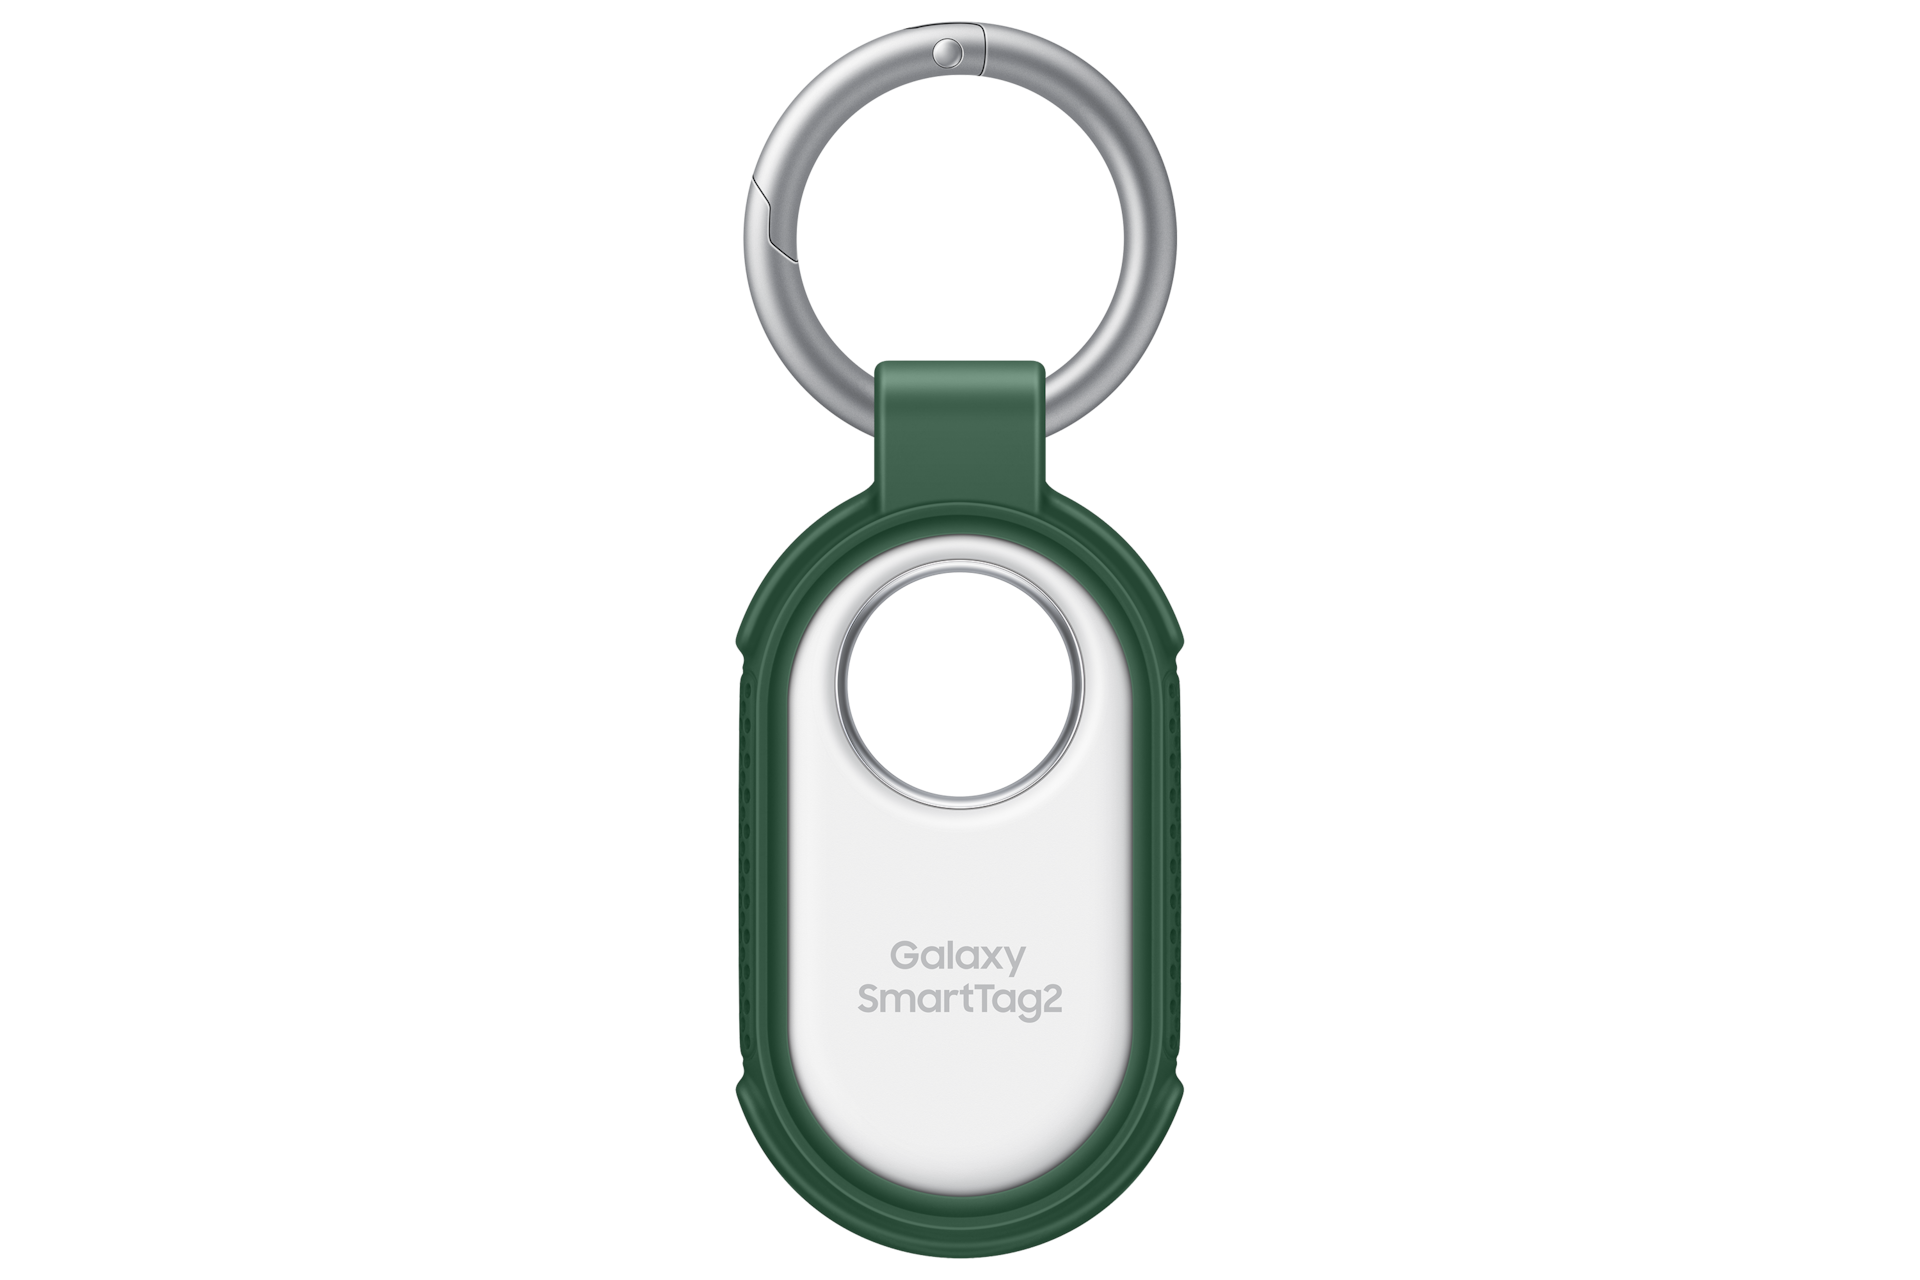 Samsung Galaxy SmartTag2 Rugged Case, Green